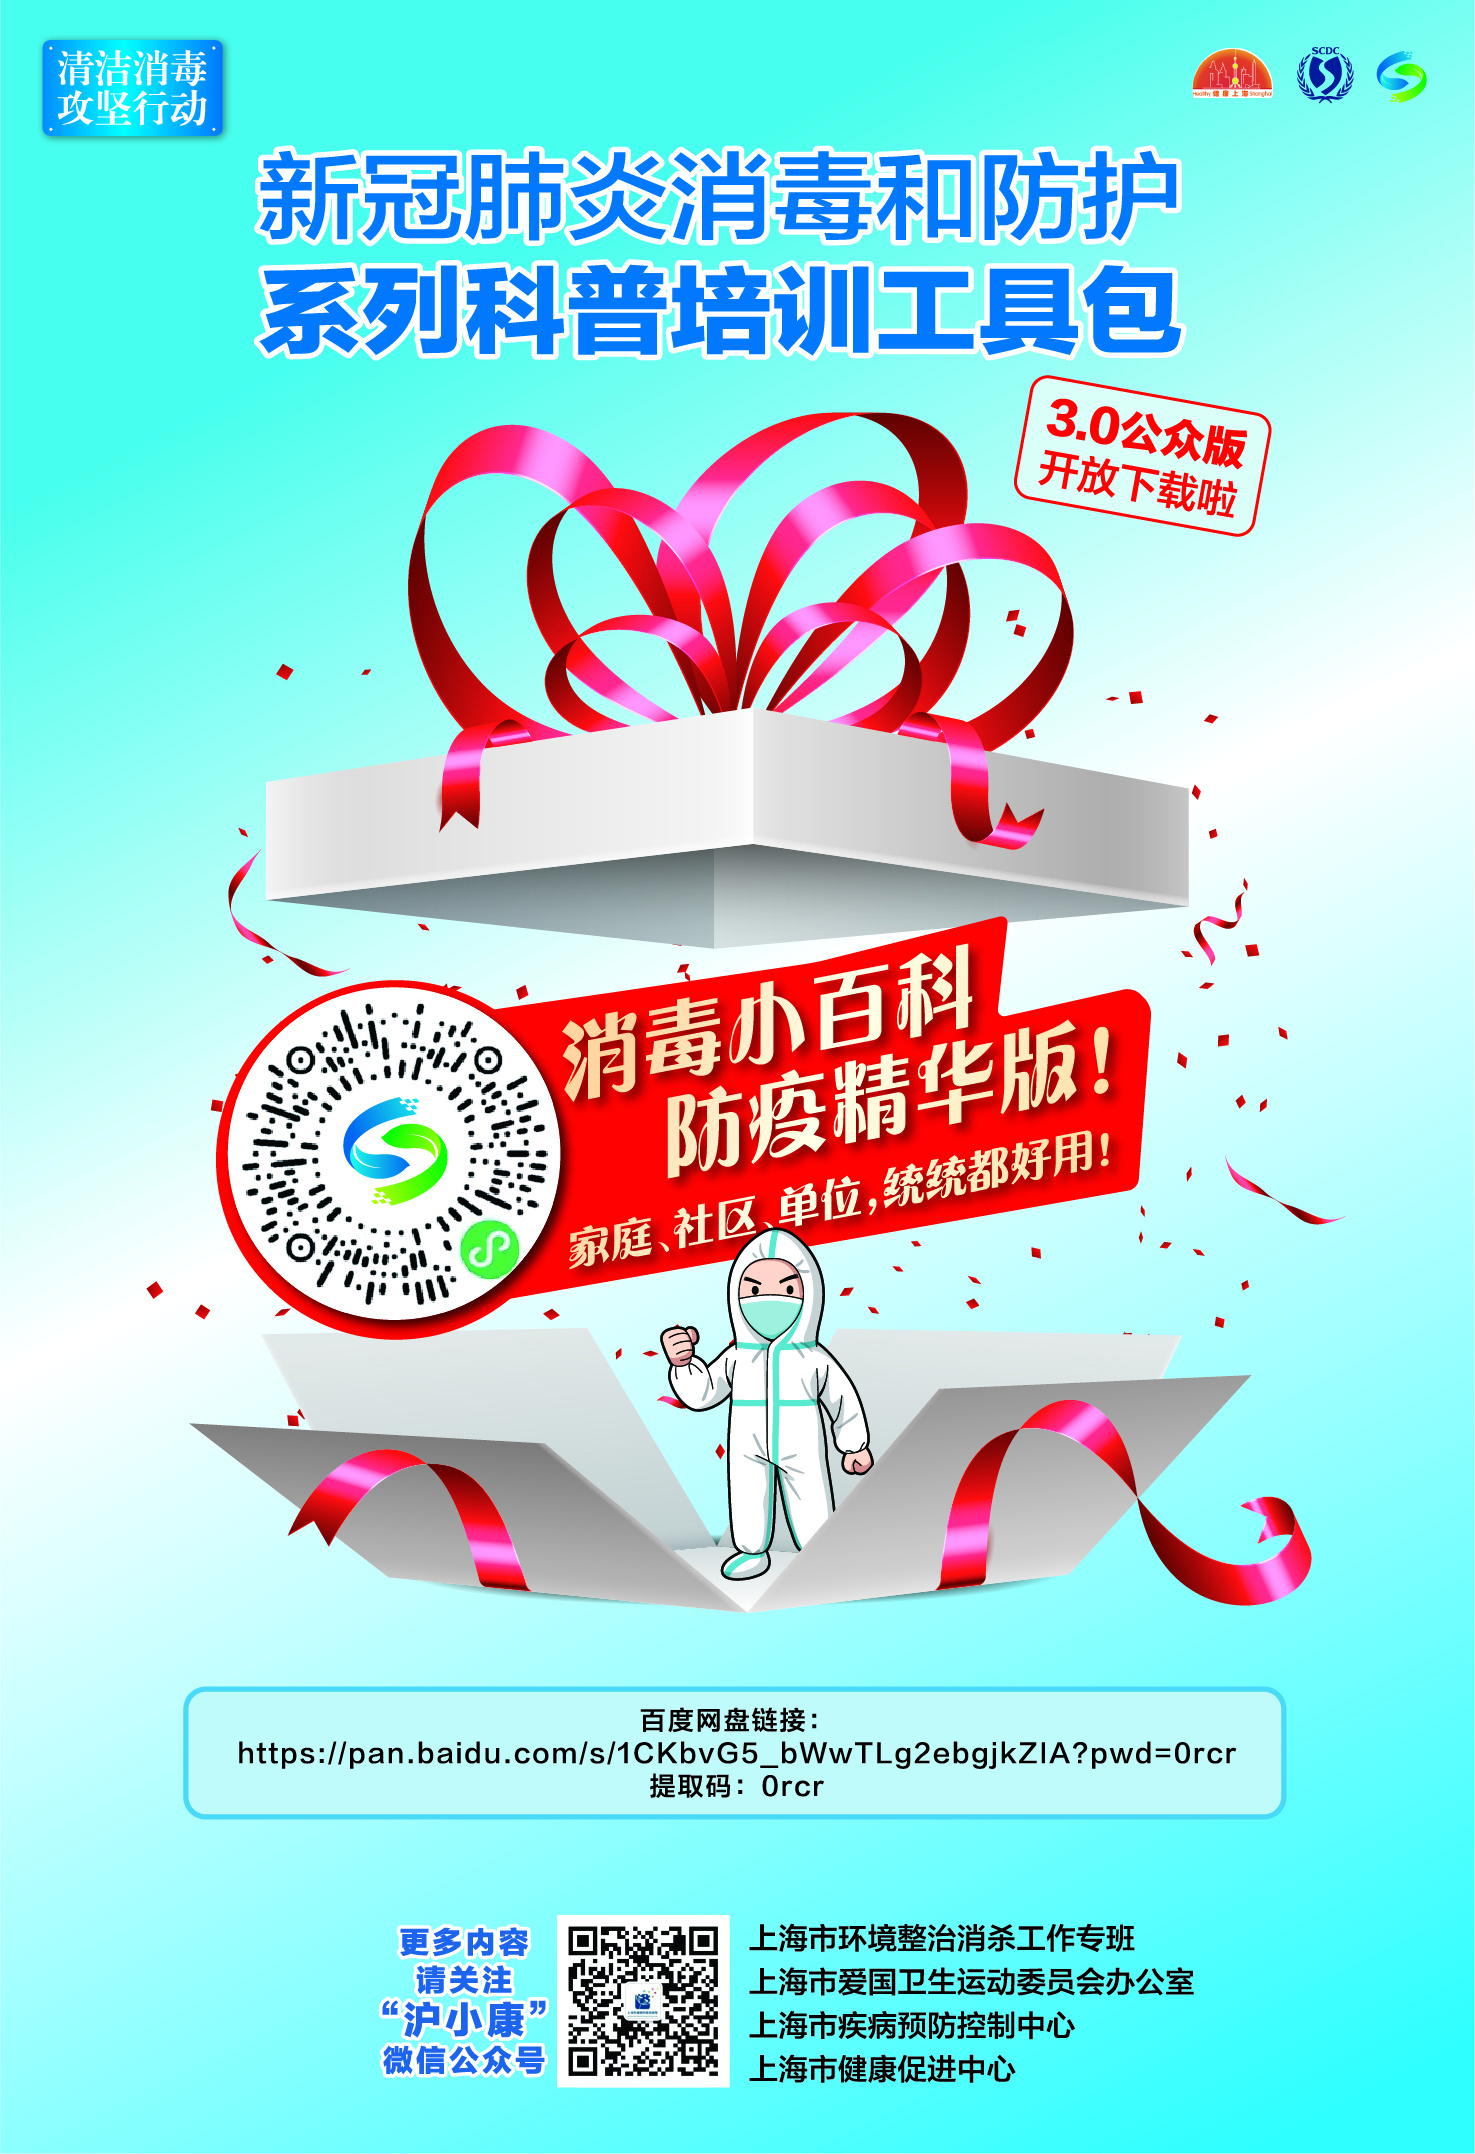 4部复工复产清洁消毒系列动画推出，上海打造消毒防疫“百科全书”